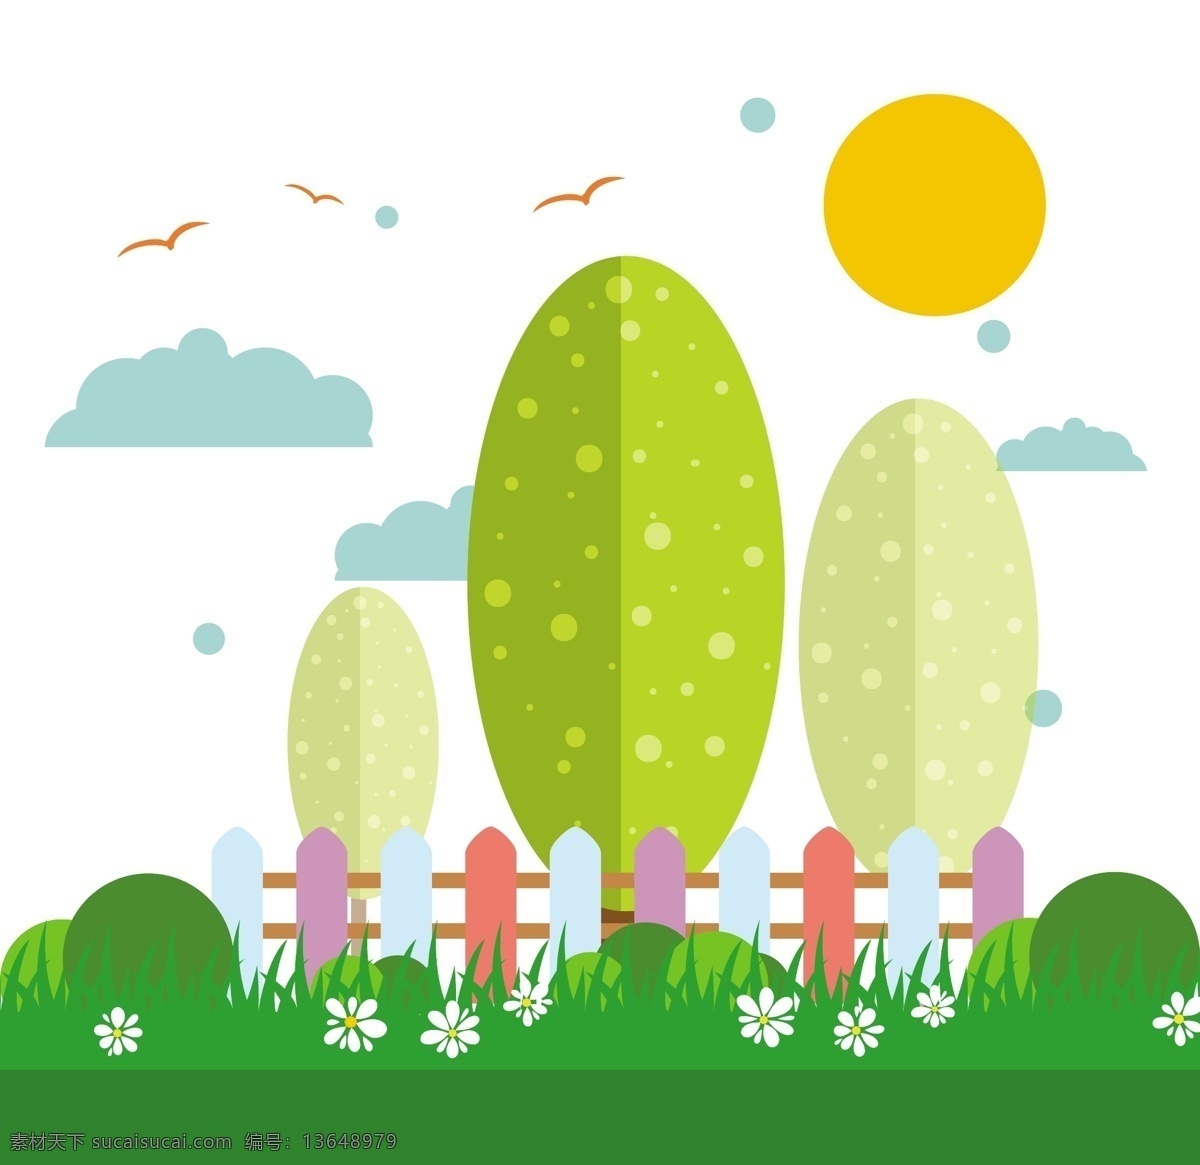 绿色 花园 背景 图 广告背景 广告 背景素材 底纹背景 大树 鲜花 篱笆 漂亮 太阳 云朵 小草 草丛